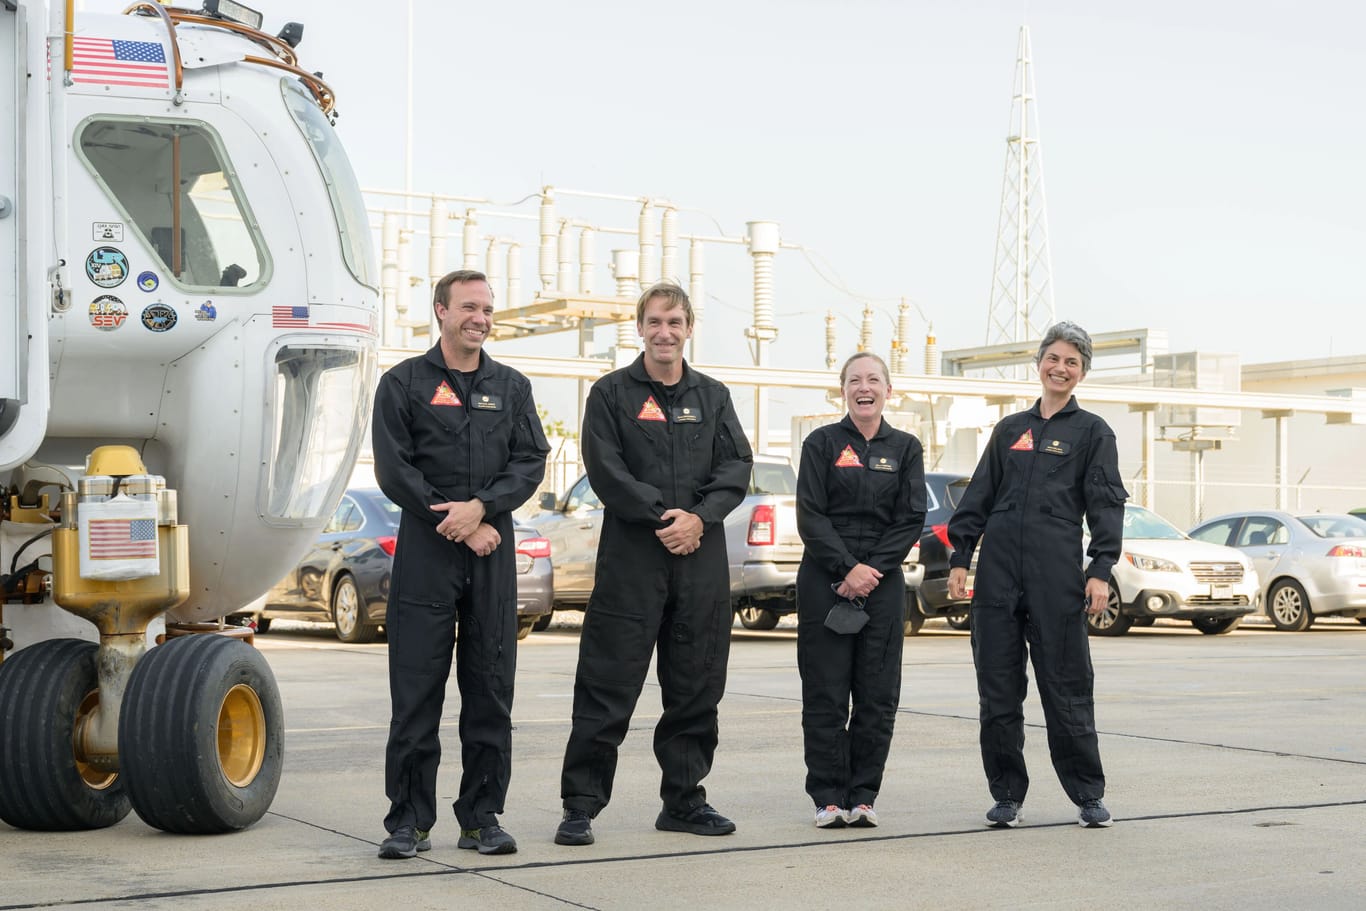 Die Besatzung der simulierten Mars-Mission der Nasa (von links: Nathan Jones, Ross Brockwell, Kelly Haston, Anca Selariu) macht sich auf den Weg zur Chapea-Einrichtung.